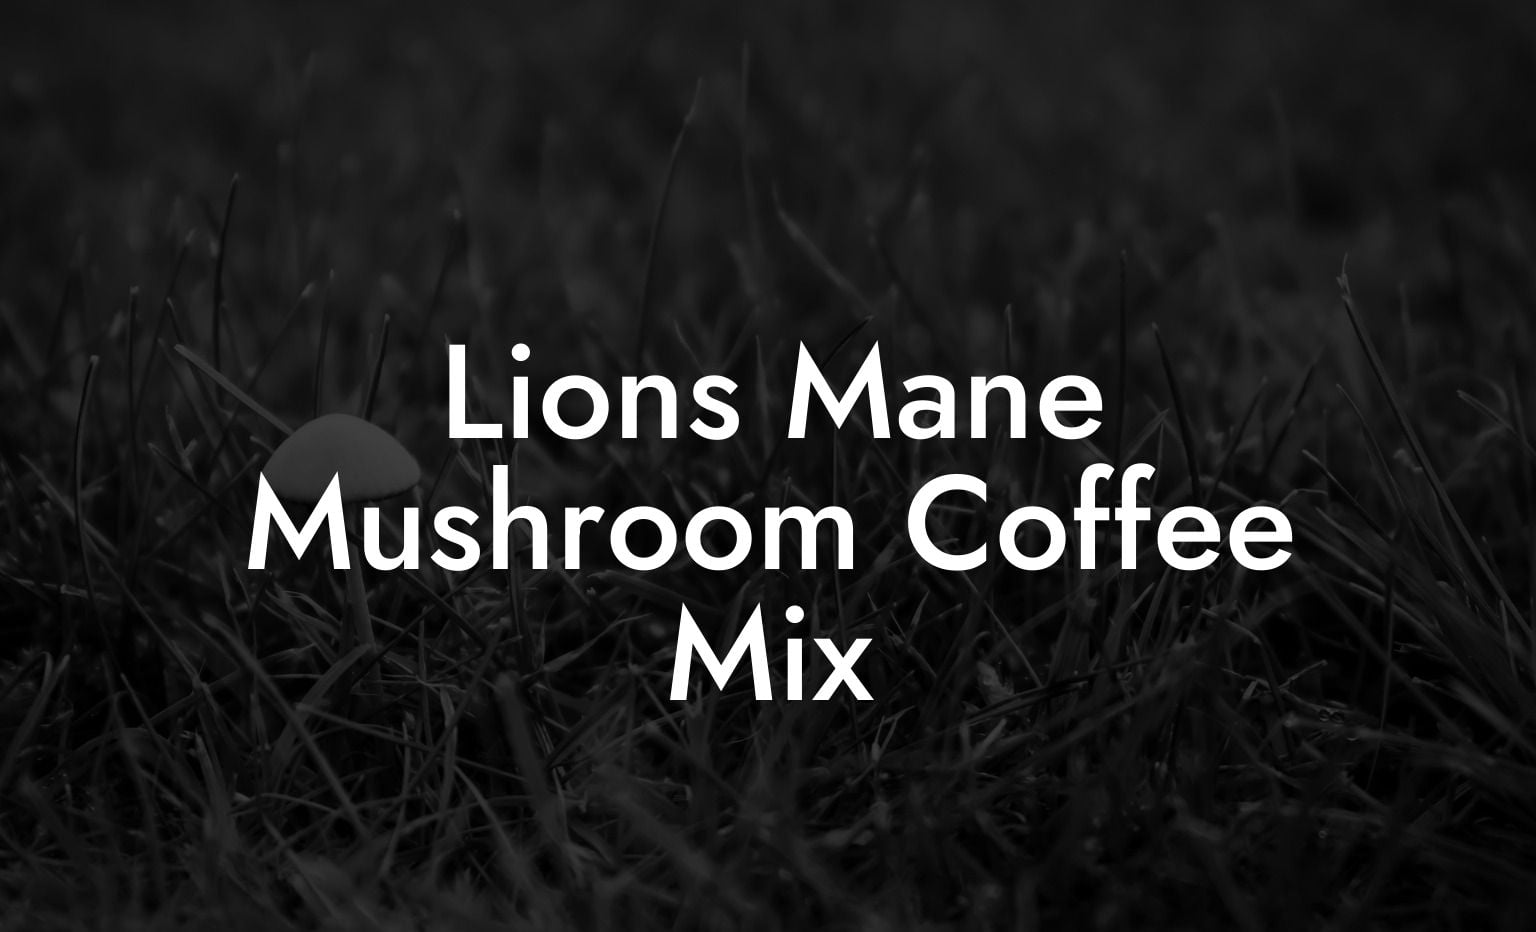 Lions Mane Mushroom Coffee Mix